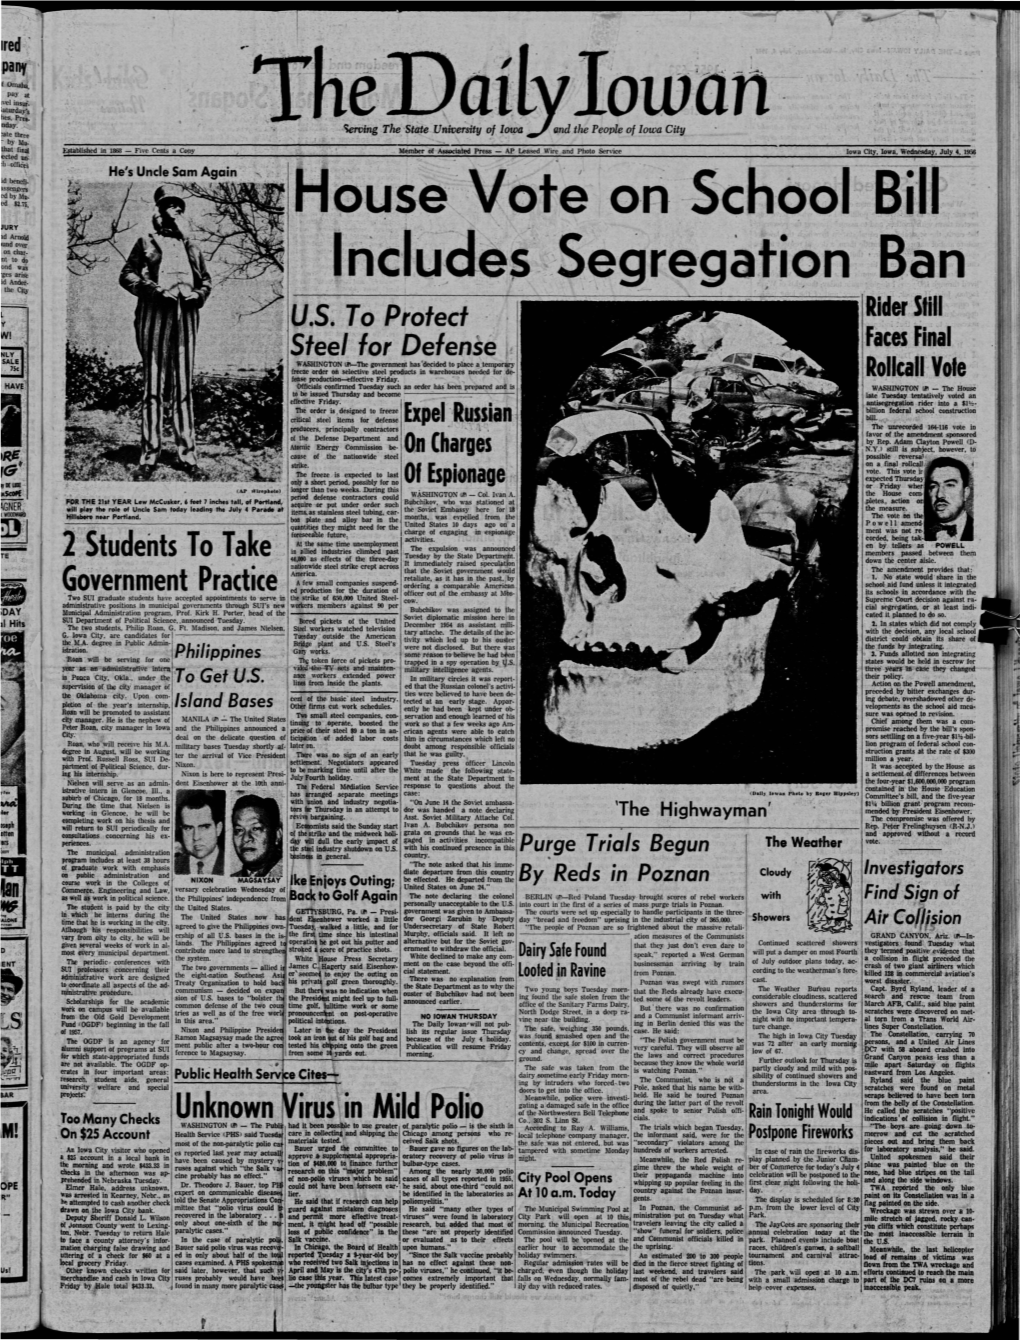 Daily Iowan (Iowa City, Iowa), 1956-07-04